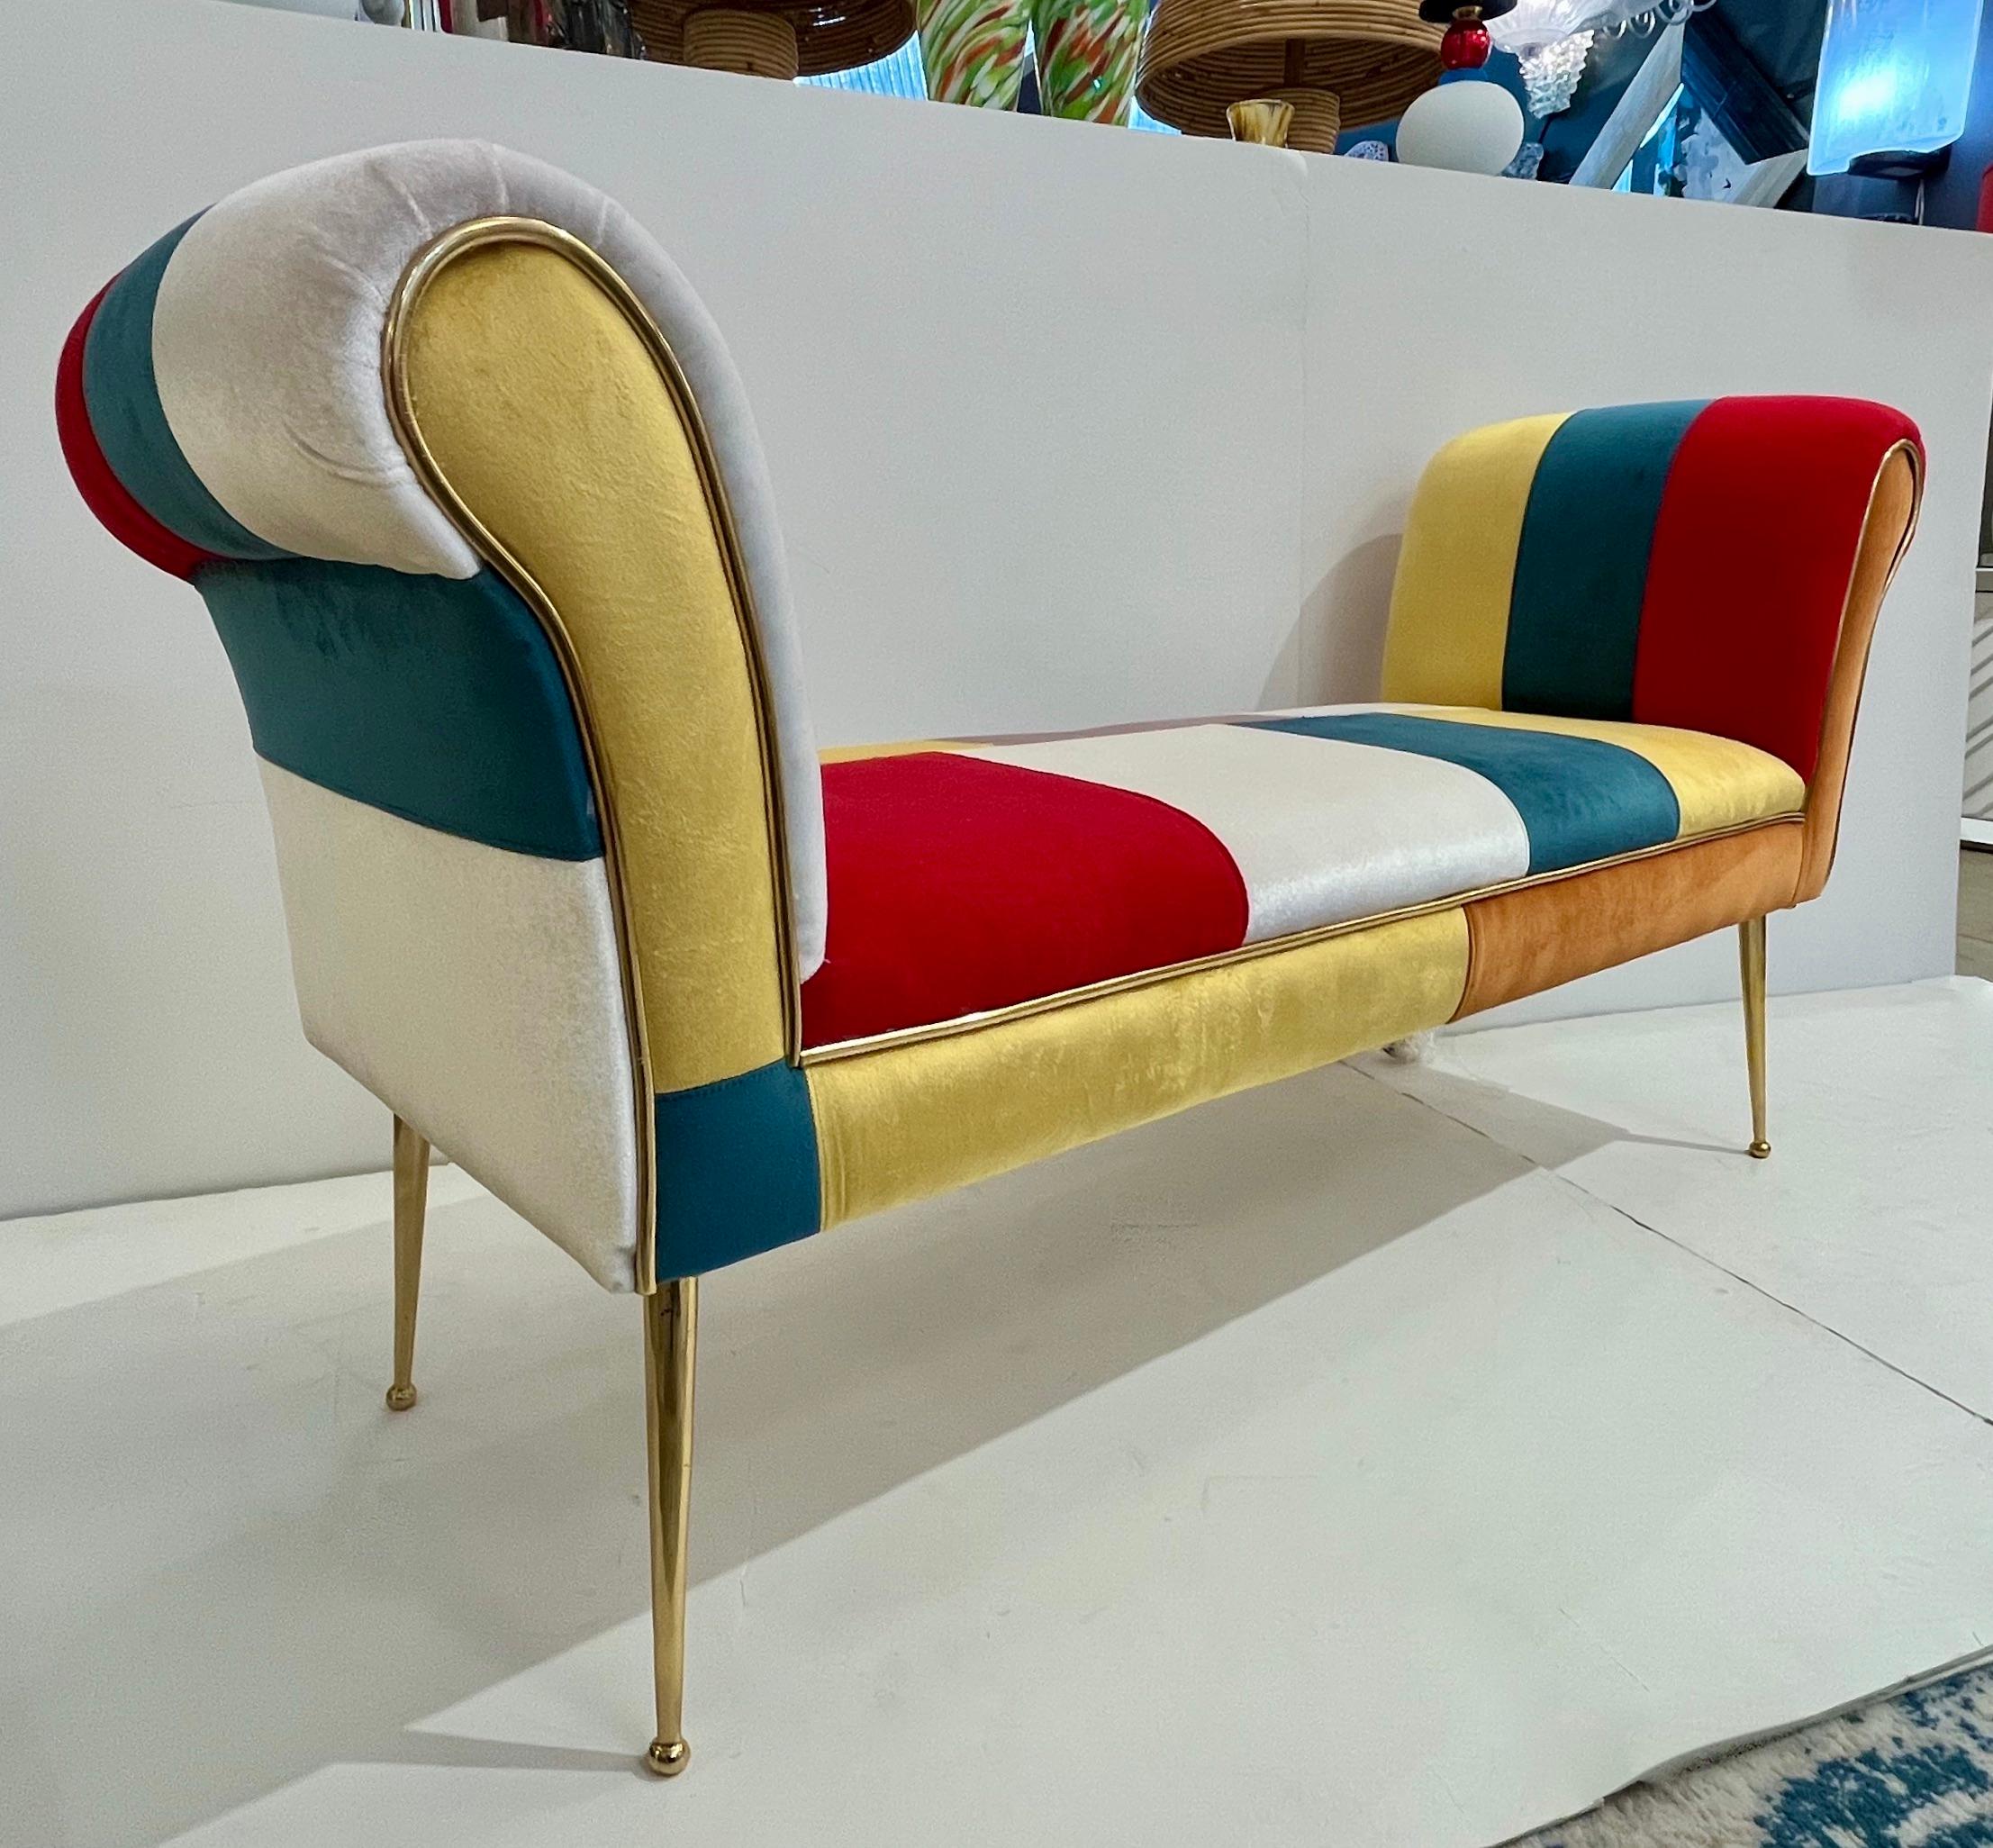 Eine sehr lustige und farbenfrohe Ergänzung für jedes Interieur, die die Stimmung hebt! Ein modernes italienisches Sofa mit einem aufregenden Samtbezug für die ungewöhnliche und einzigartige, von Mondrian inspirierte Einrichtung, in den Farben Weiß,